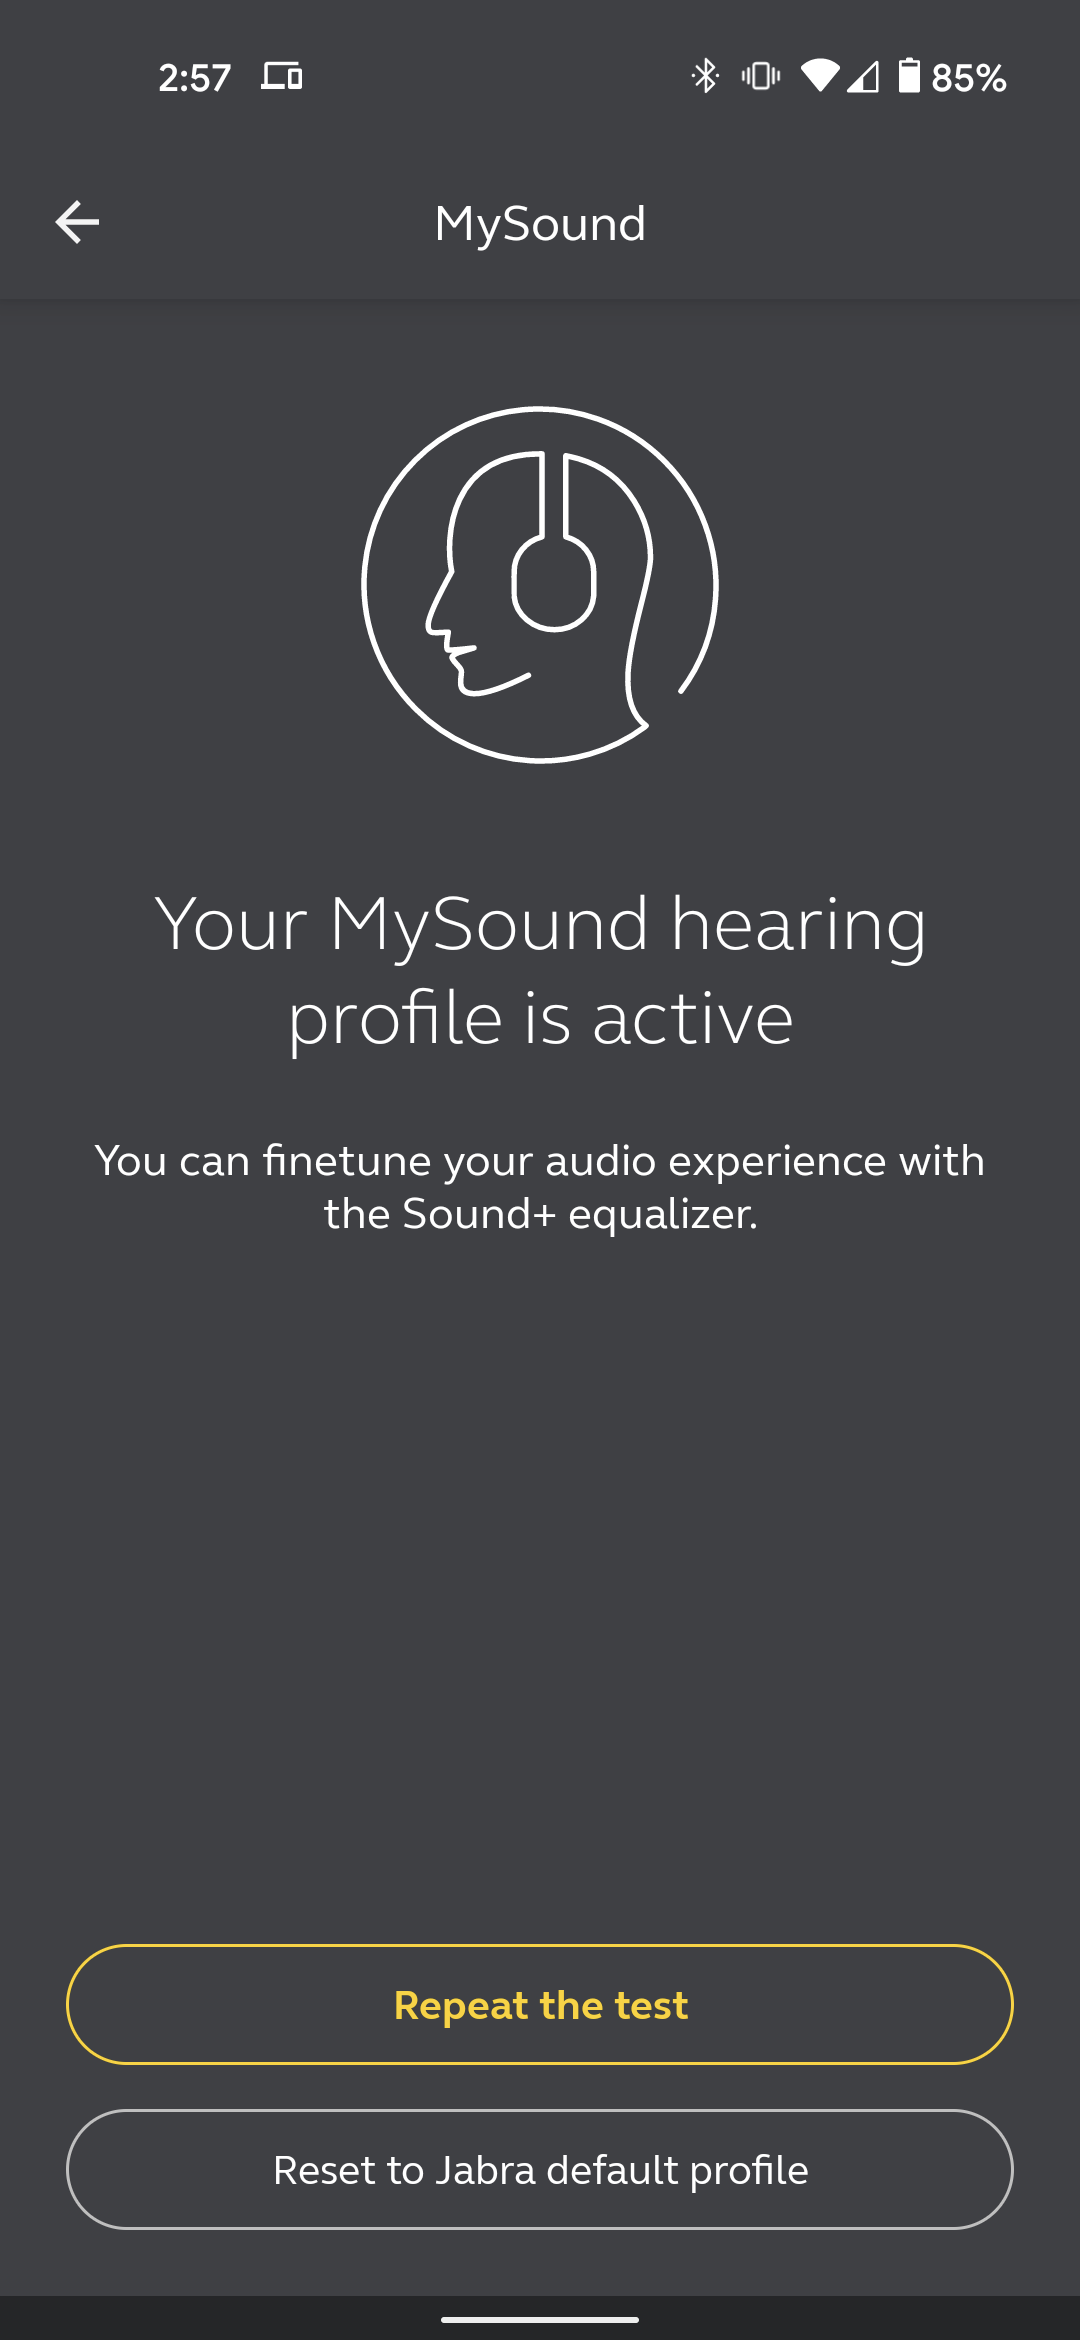 Ứng dụng Sound + với tính năng MySound